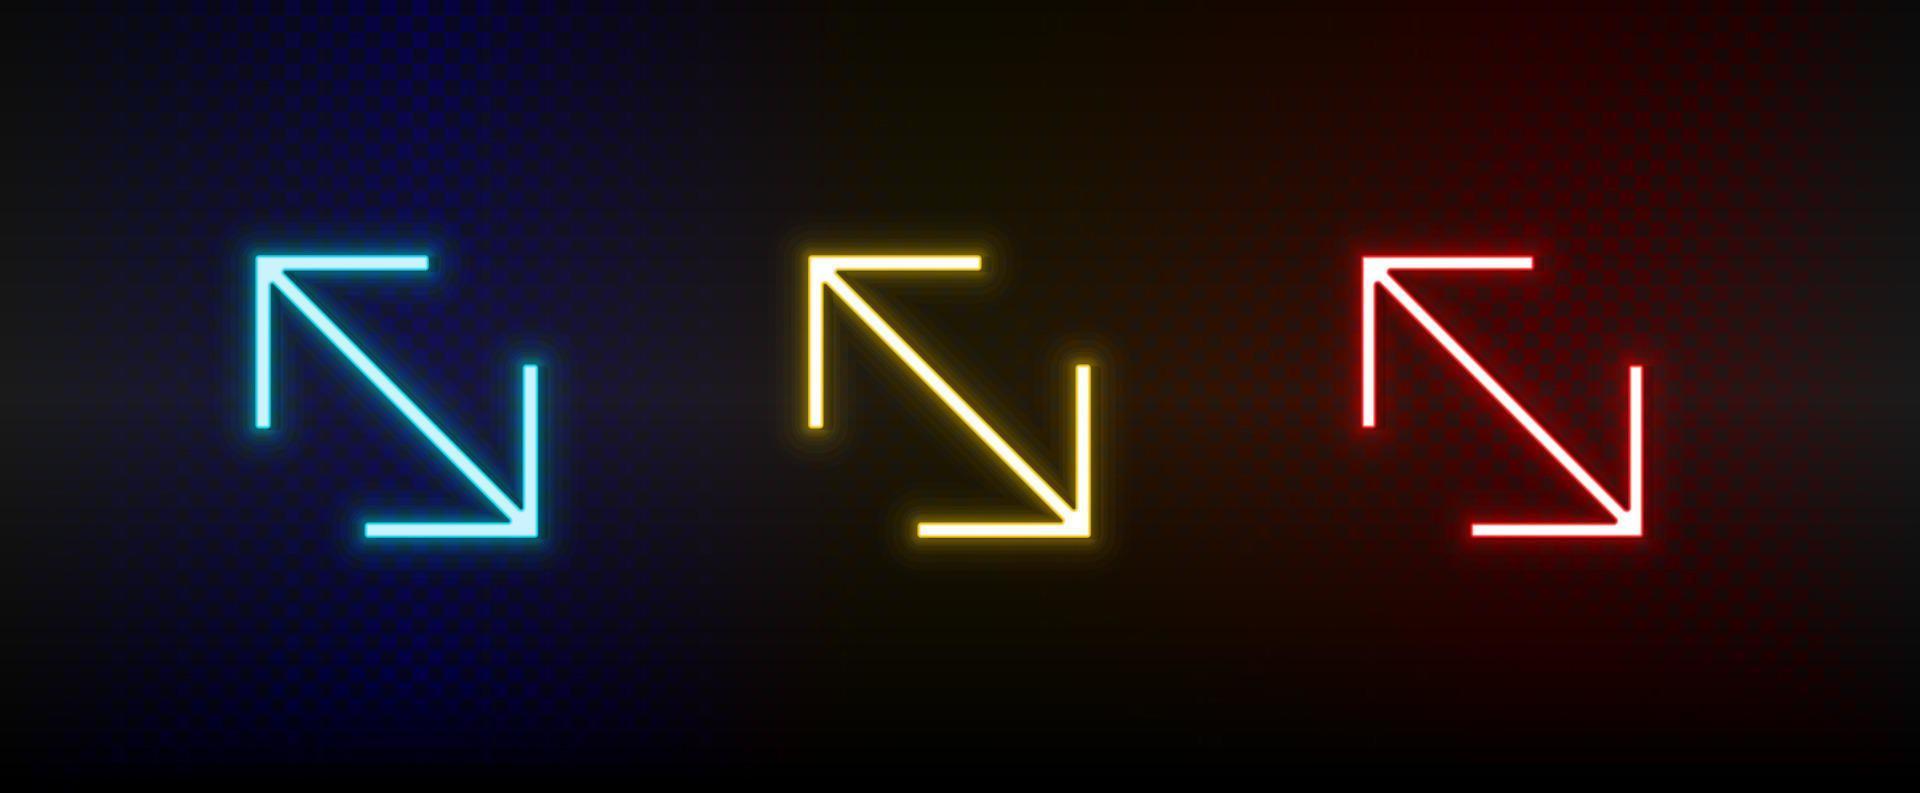 icônes au néon. flèche de l'interface utilisateur. ensemble d'icônes vectorielles néon rouge, bleu, jaune sur fond sombre vecteur